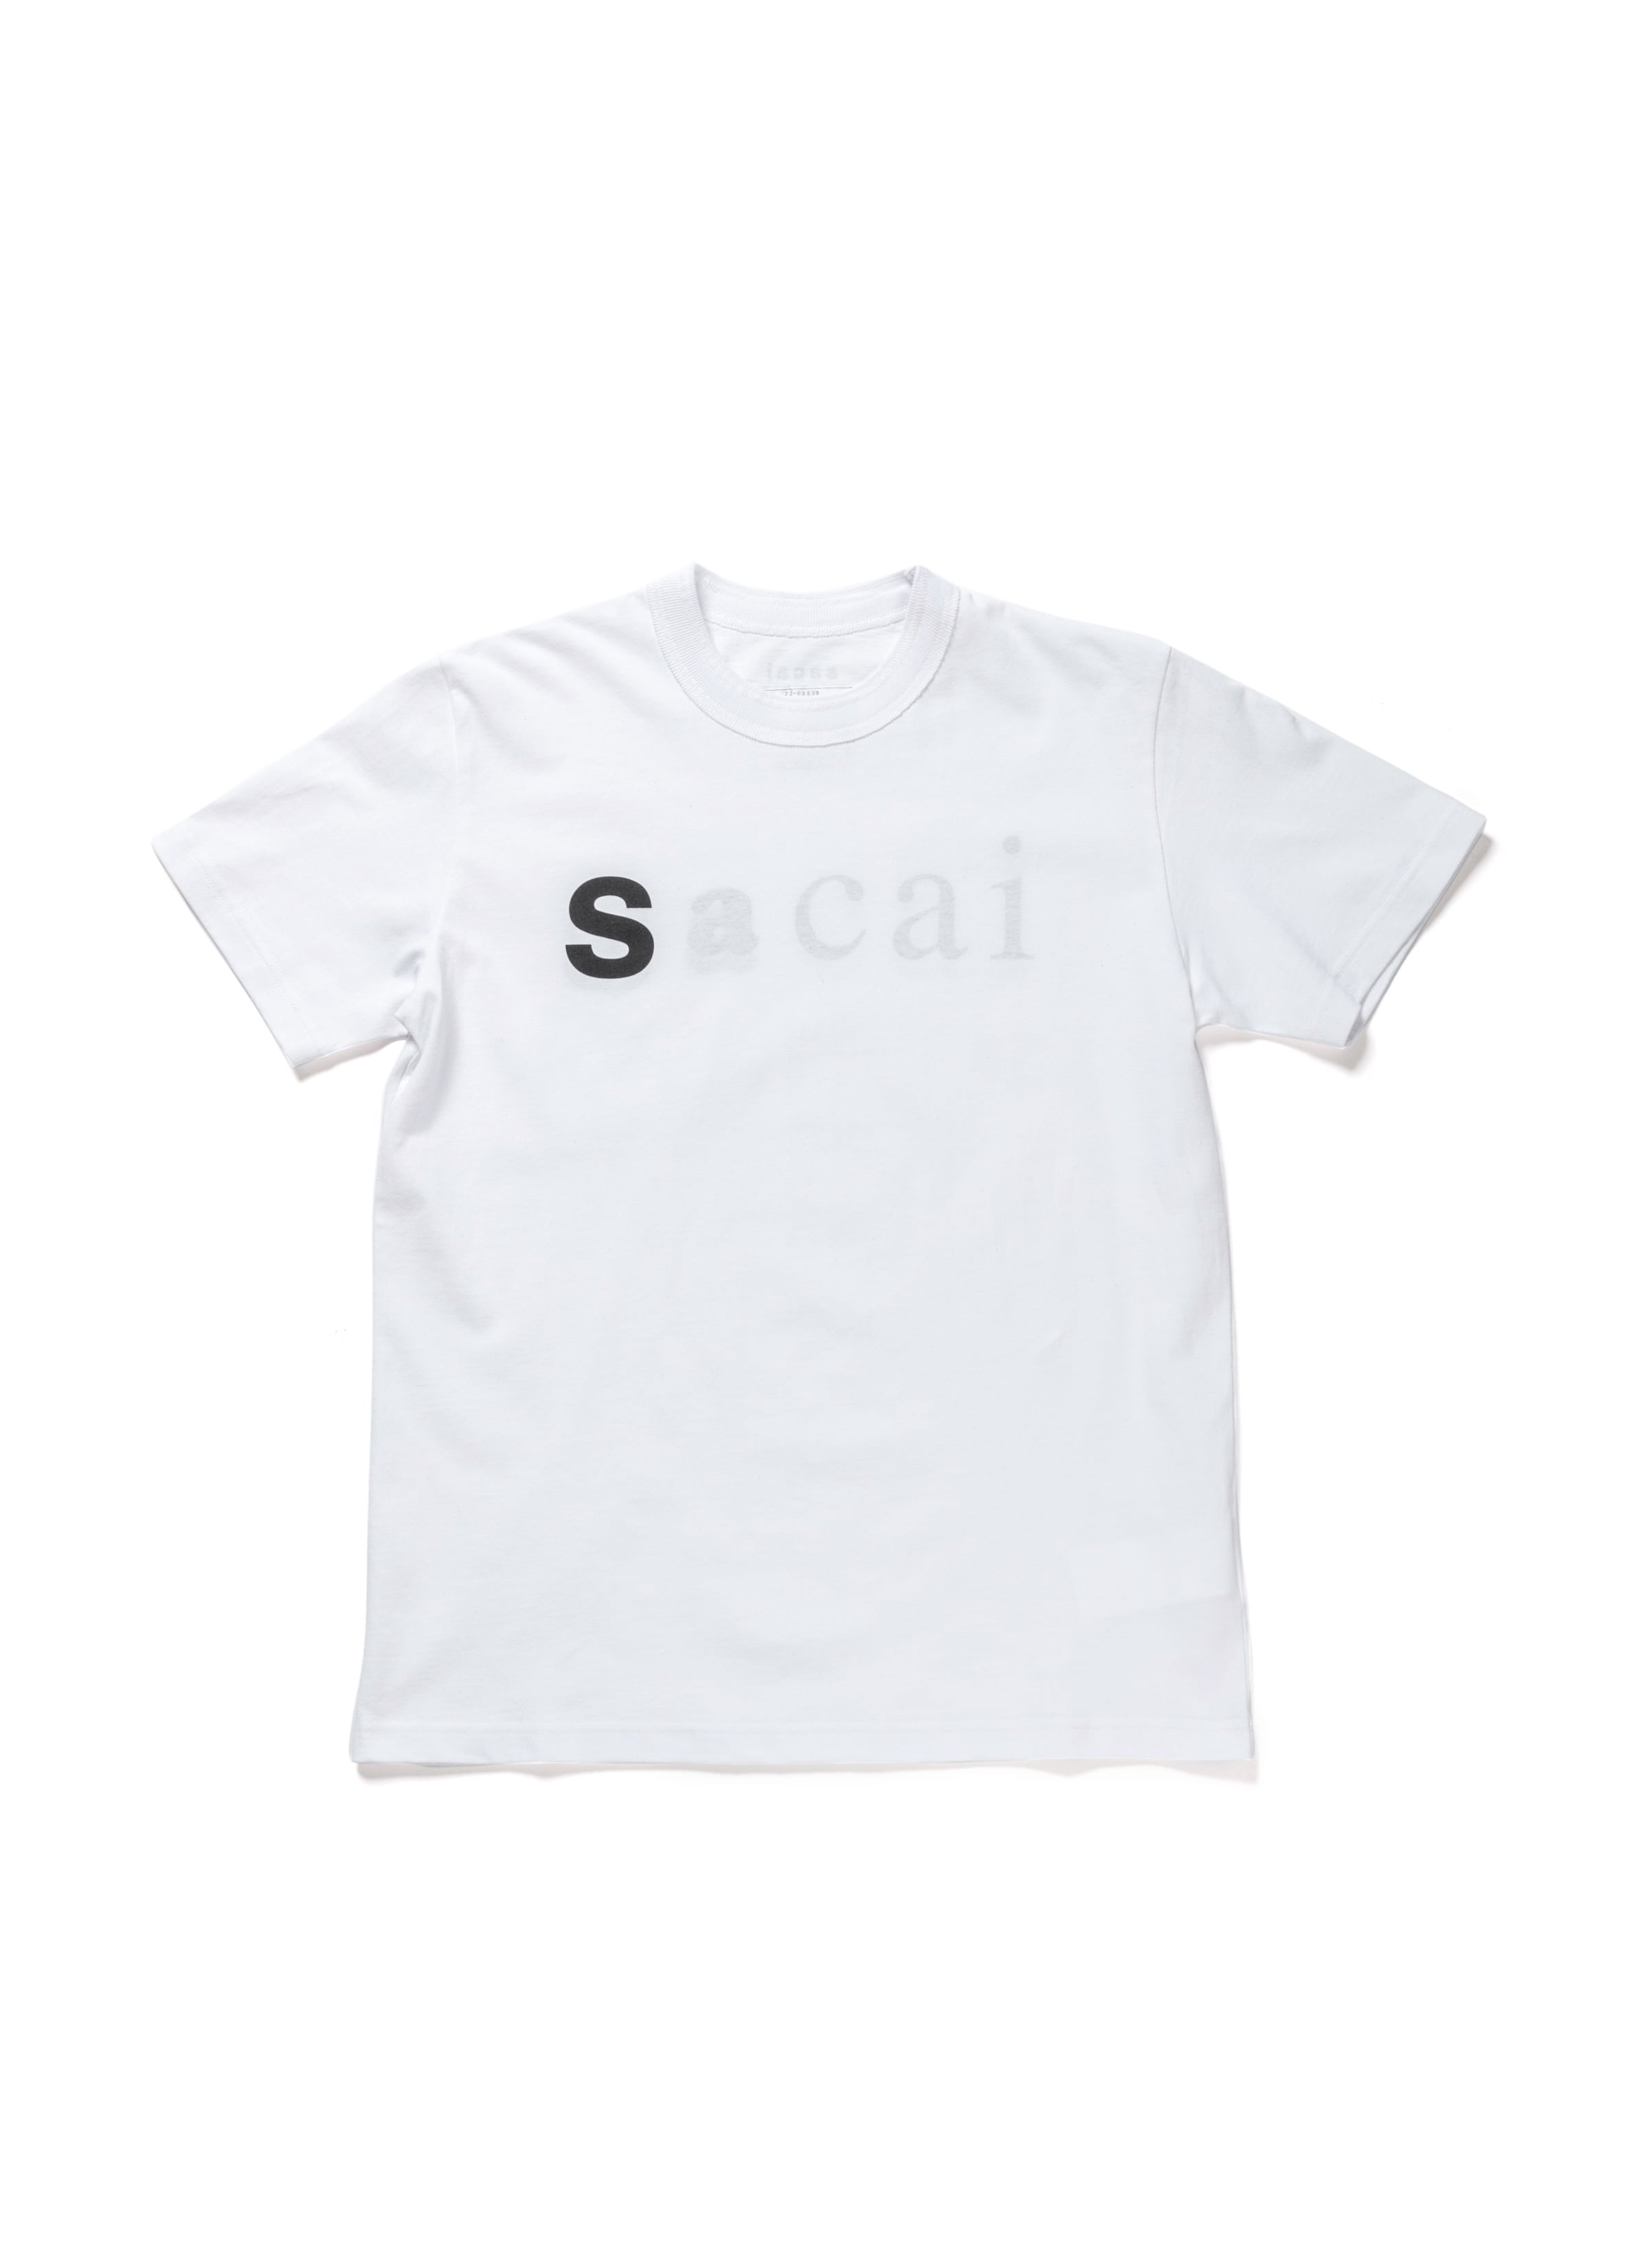 sacai オンラインストア / sacai THE storesacai T-Shirt